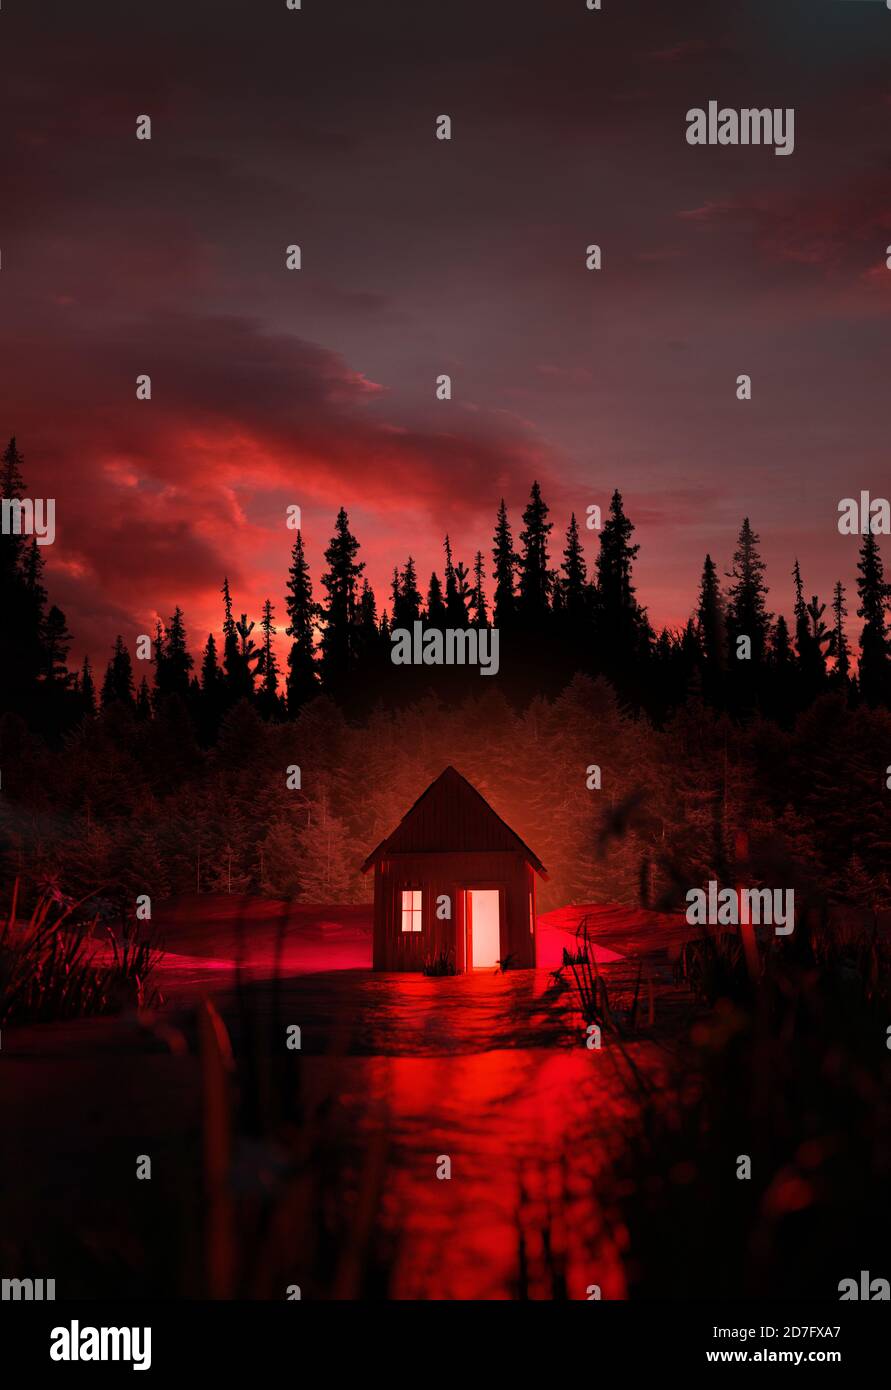 Un homme se tient devant une cabane rouge flamboante et abandonnée isolée dans le neiddle d'une forêt mystérieuse et sinistre. Illustration 3D Banque D'Images